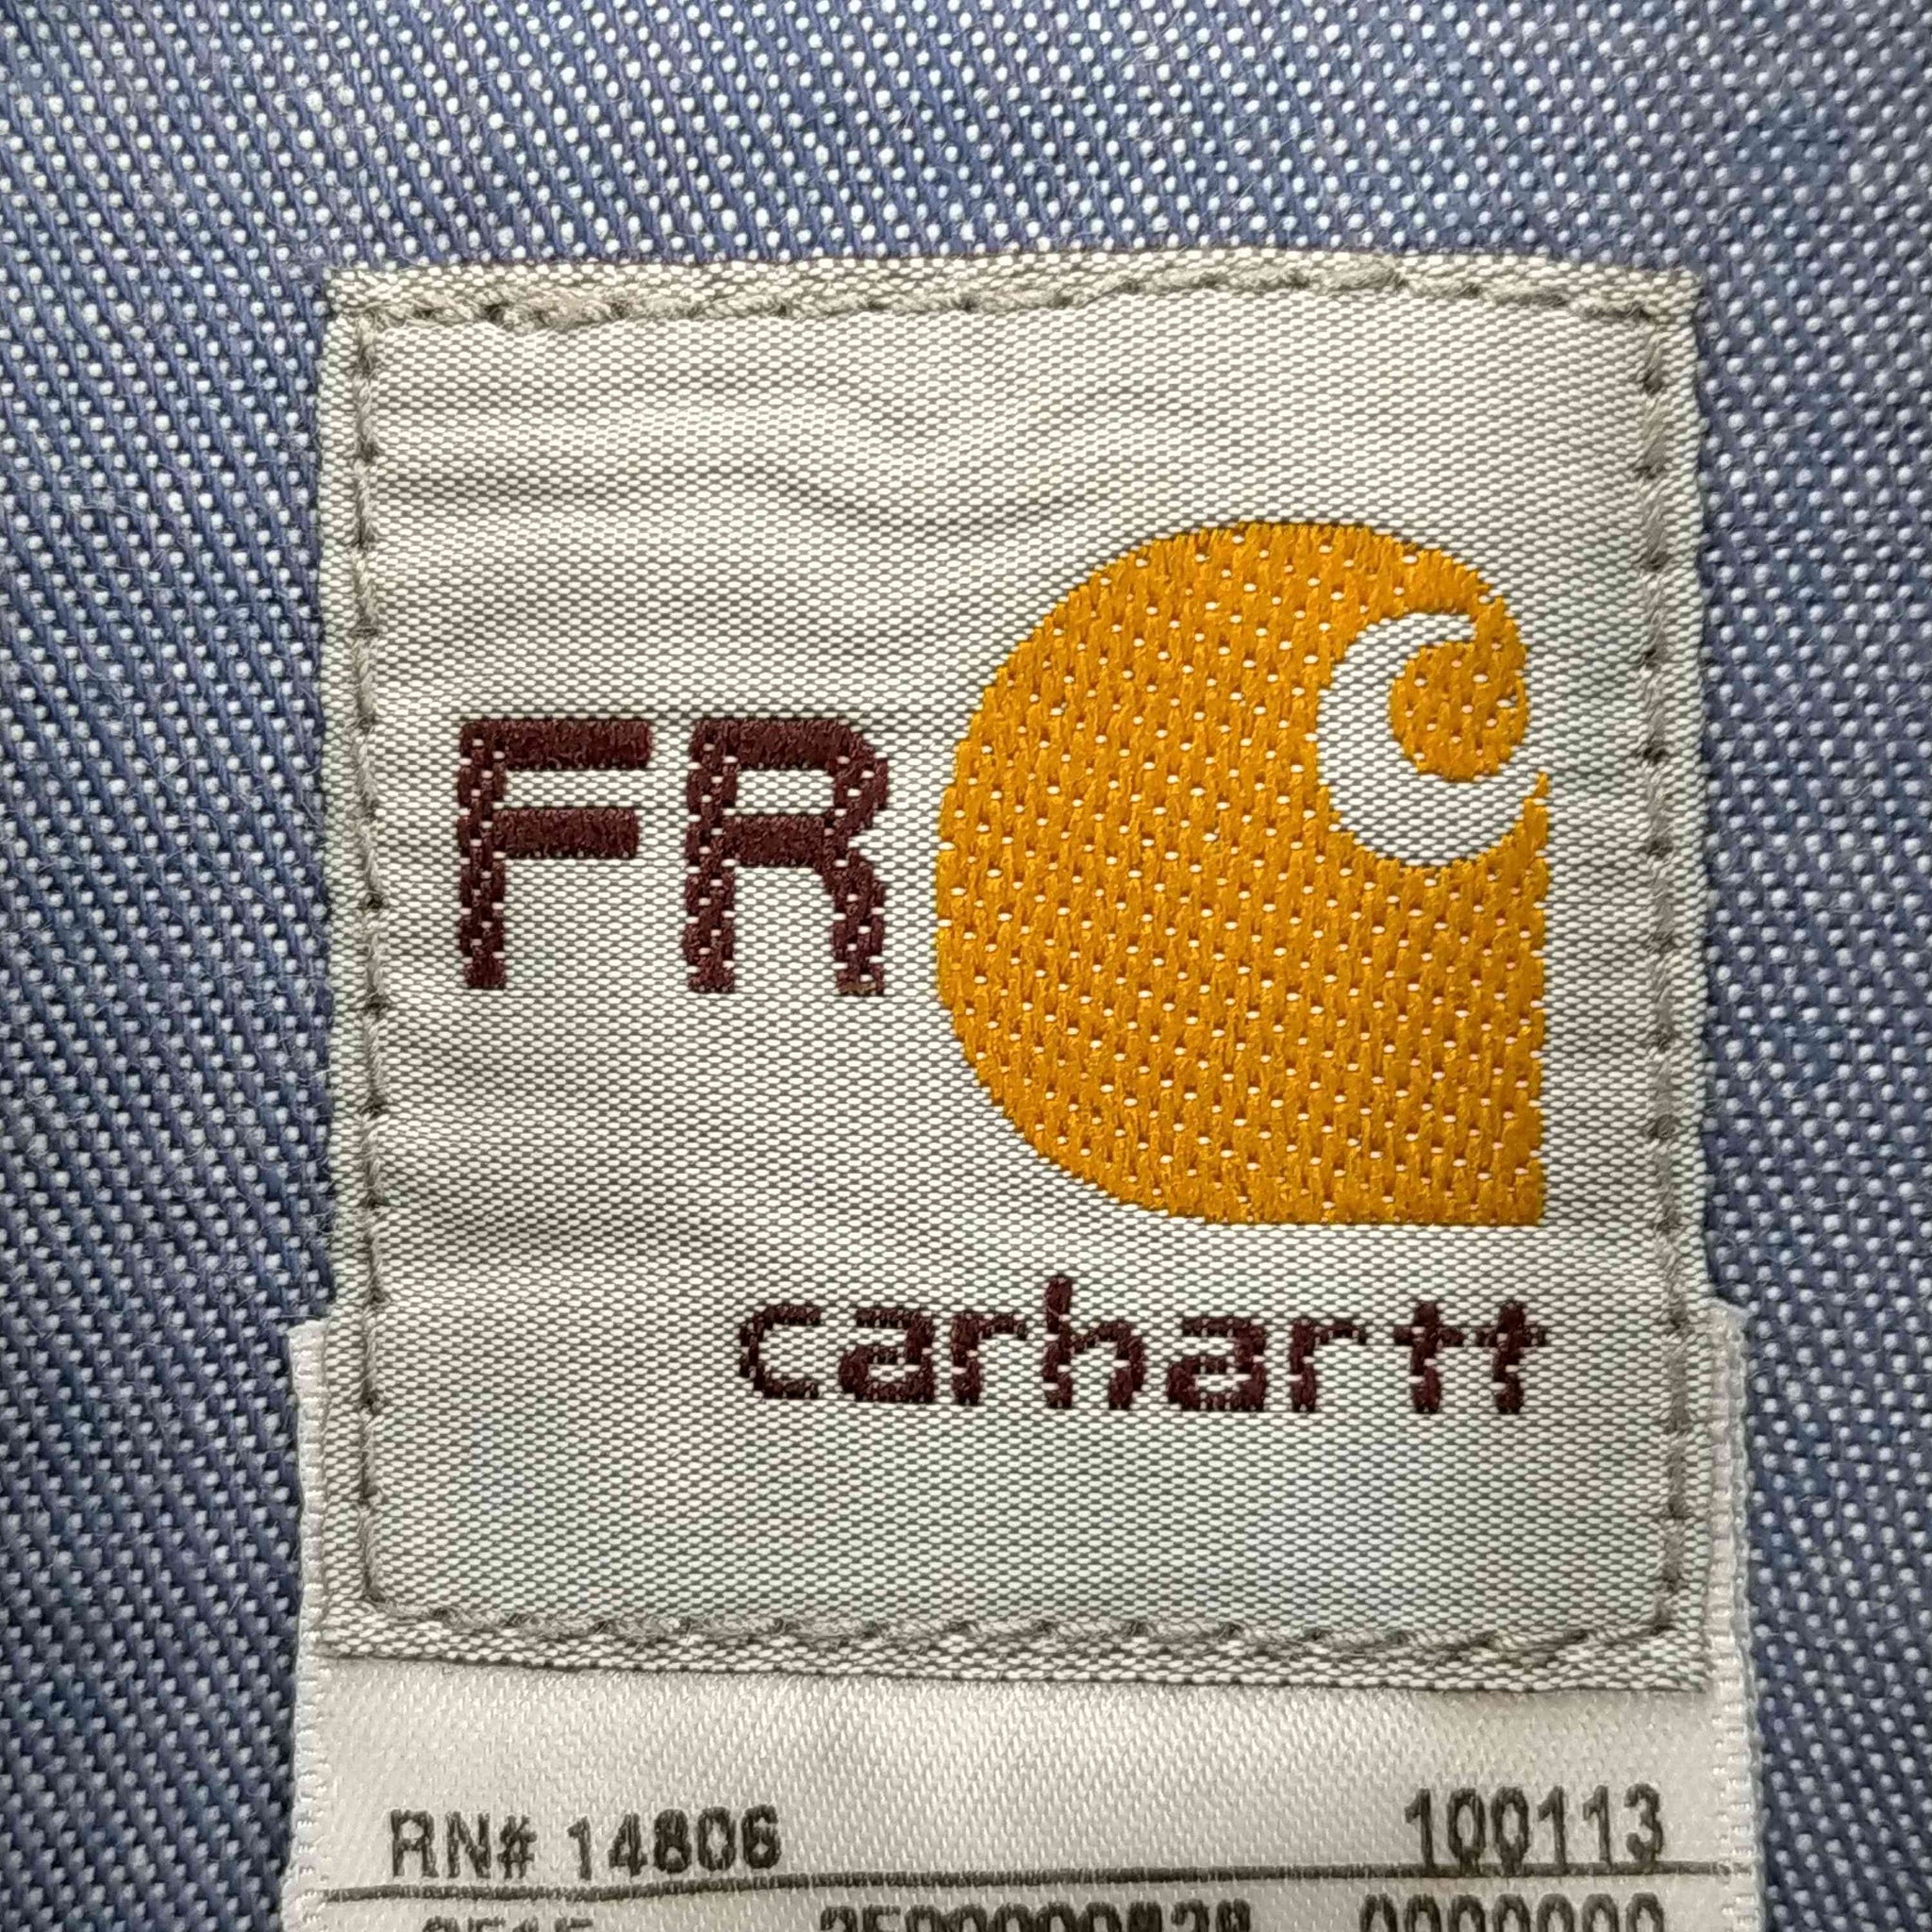 Carhartt(カーハート)シャンブレーワークボタンダウンシャツ 企業ロゴ